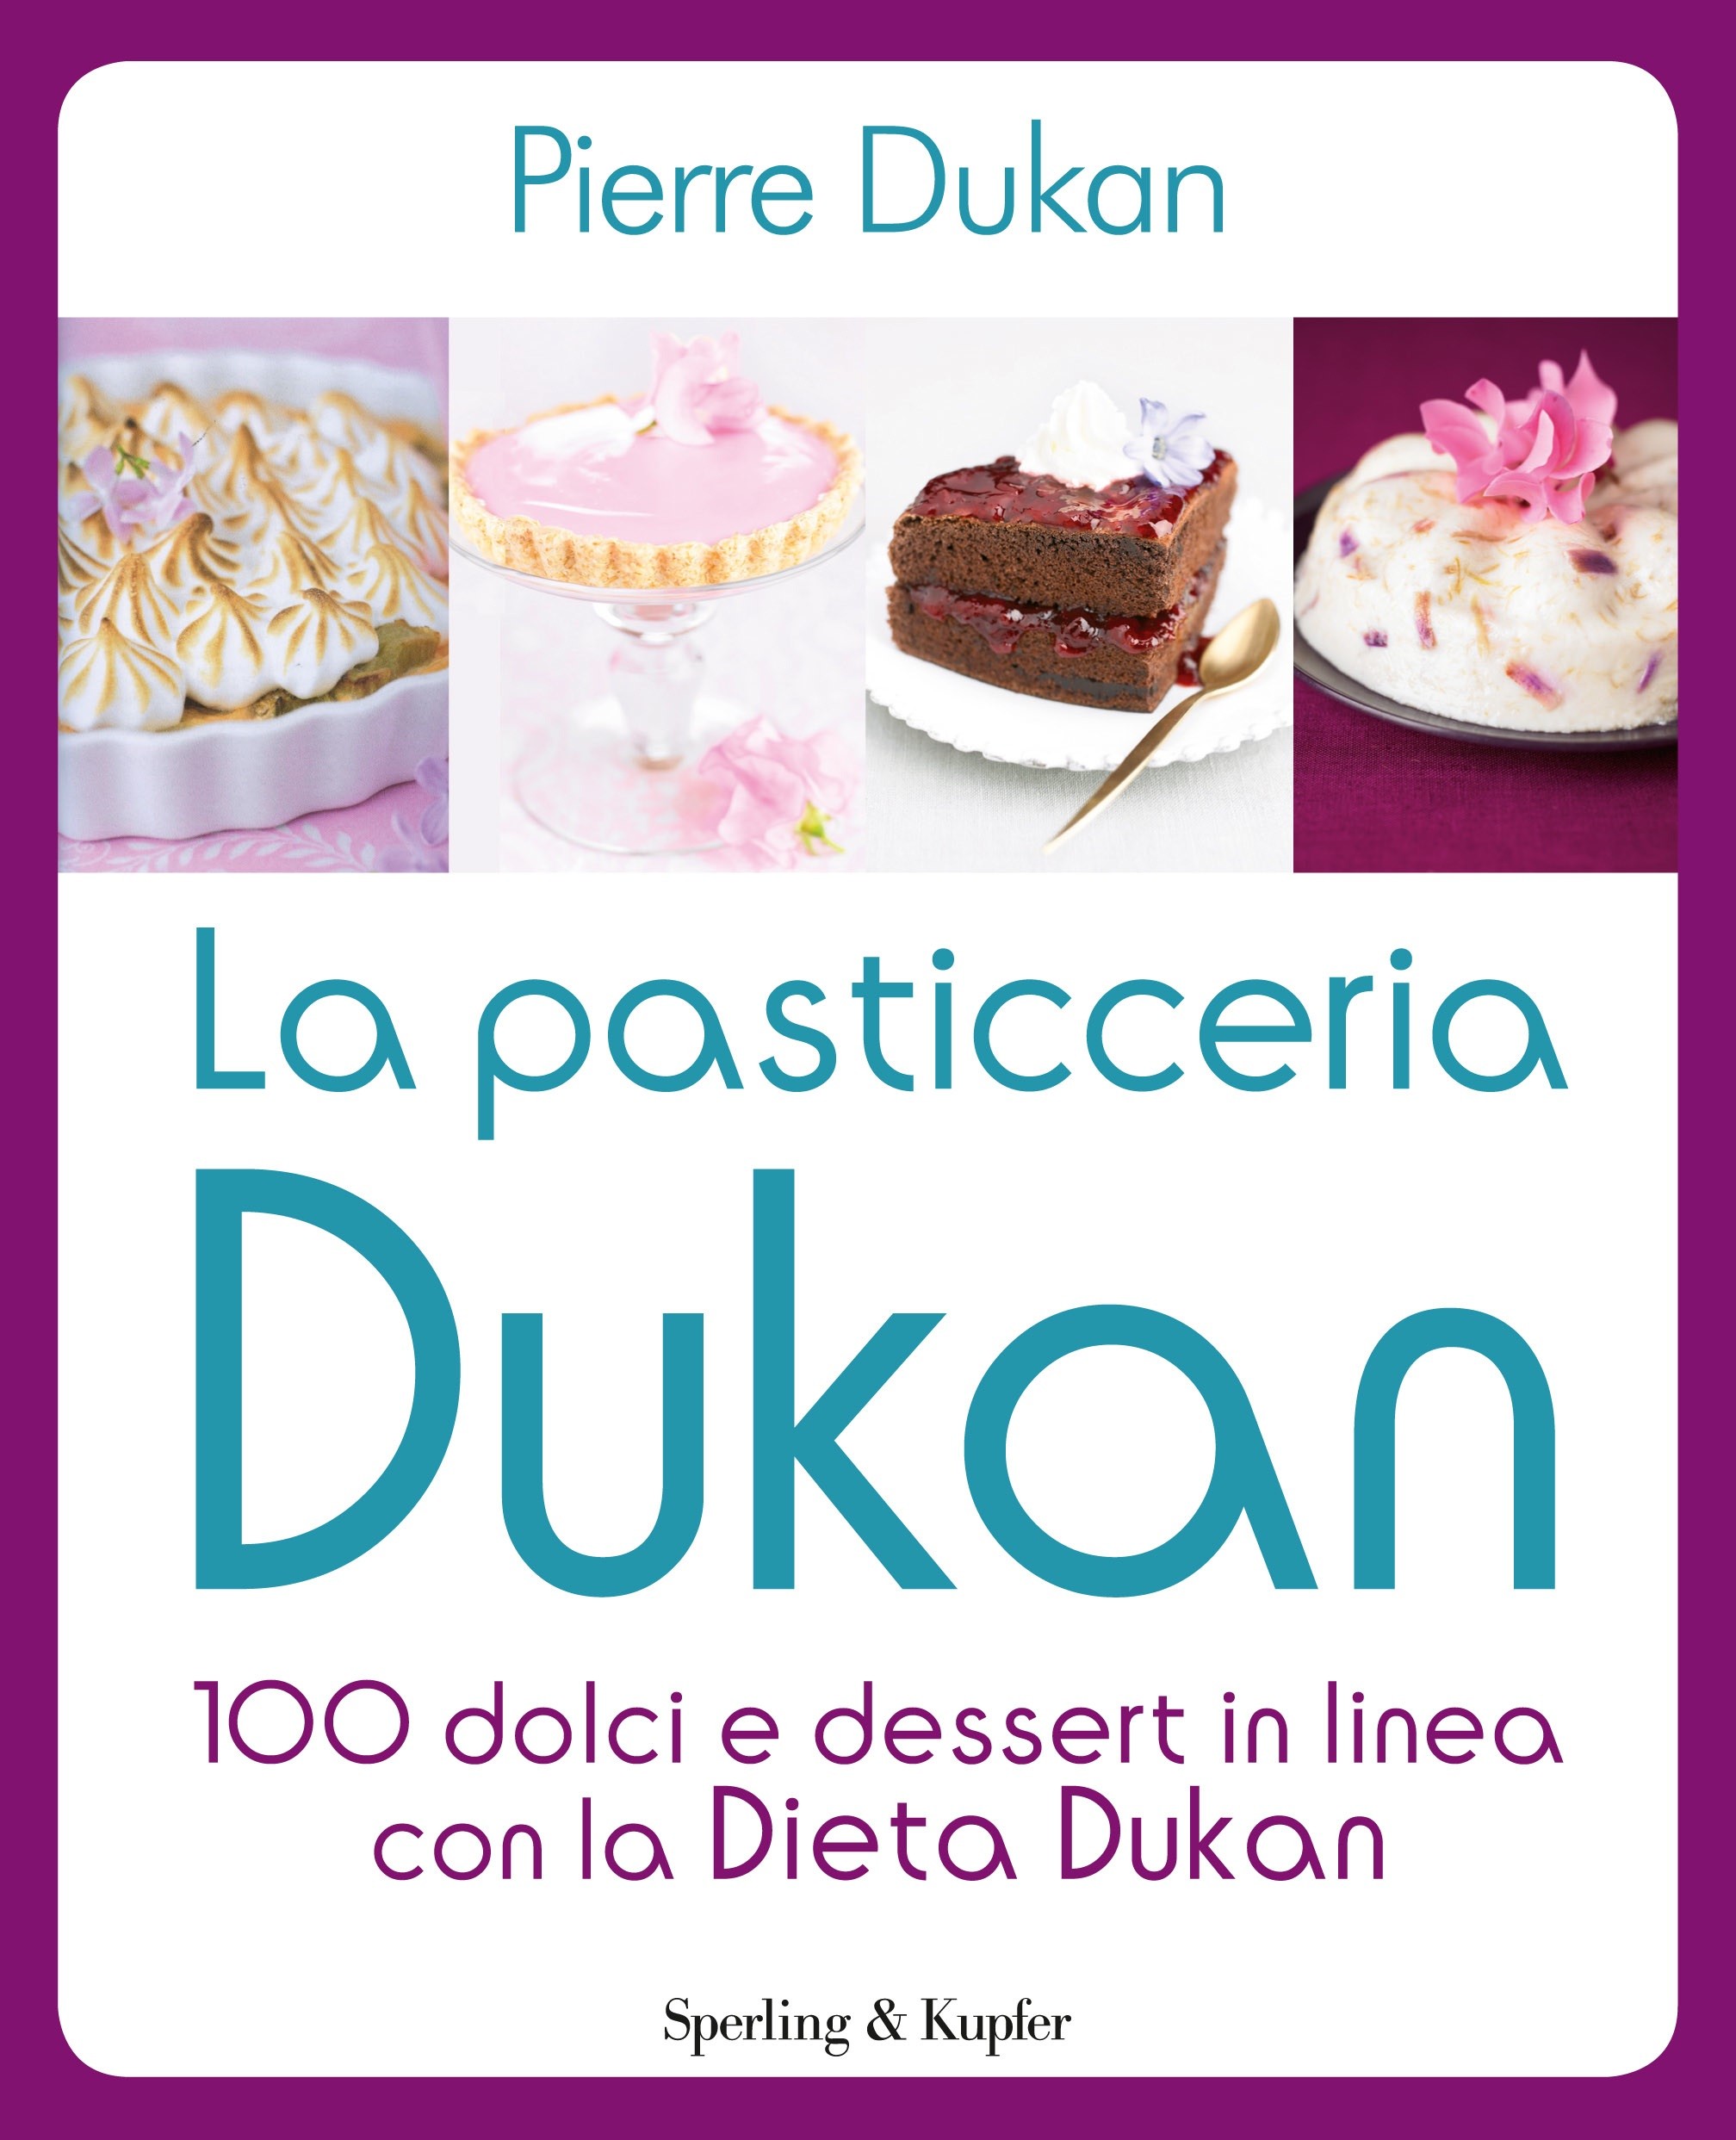 Ricette dolci e dessert della dieta Dukan